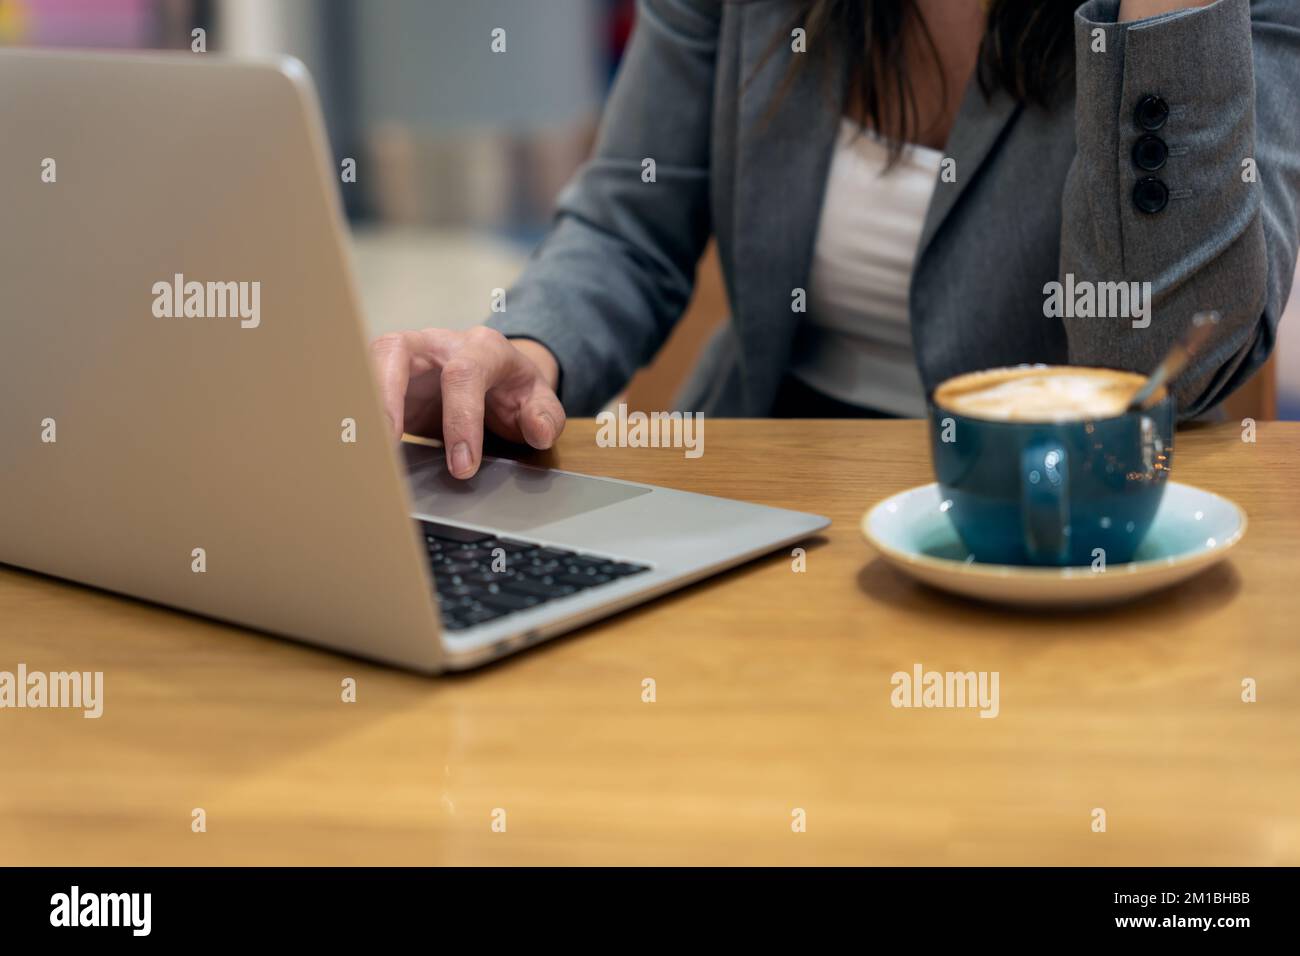 Anonyme weibliche Führungskraft, die mit dem Touchpad Daten auf einem Netbook in der Nähe einer Tasse Latte scrollt, während sie am Tisch sitzt und an einem Geschäftsprojekt arbeitet Stockfoto